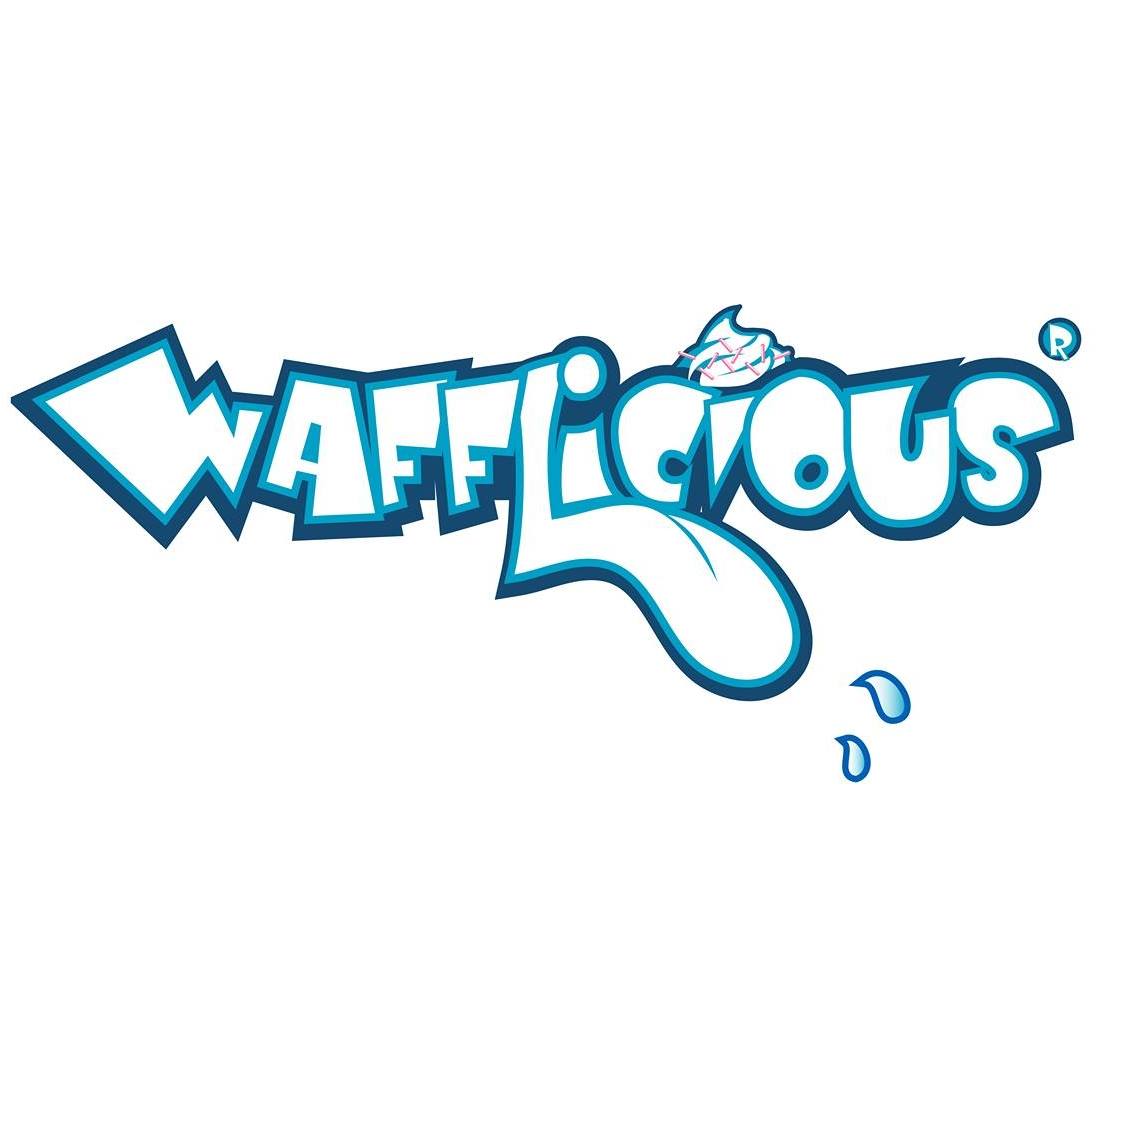 Wafflicious company